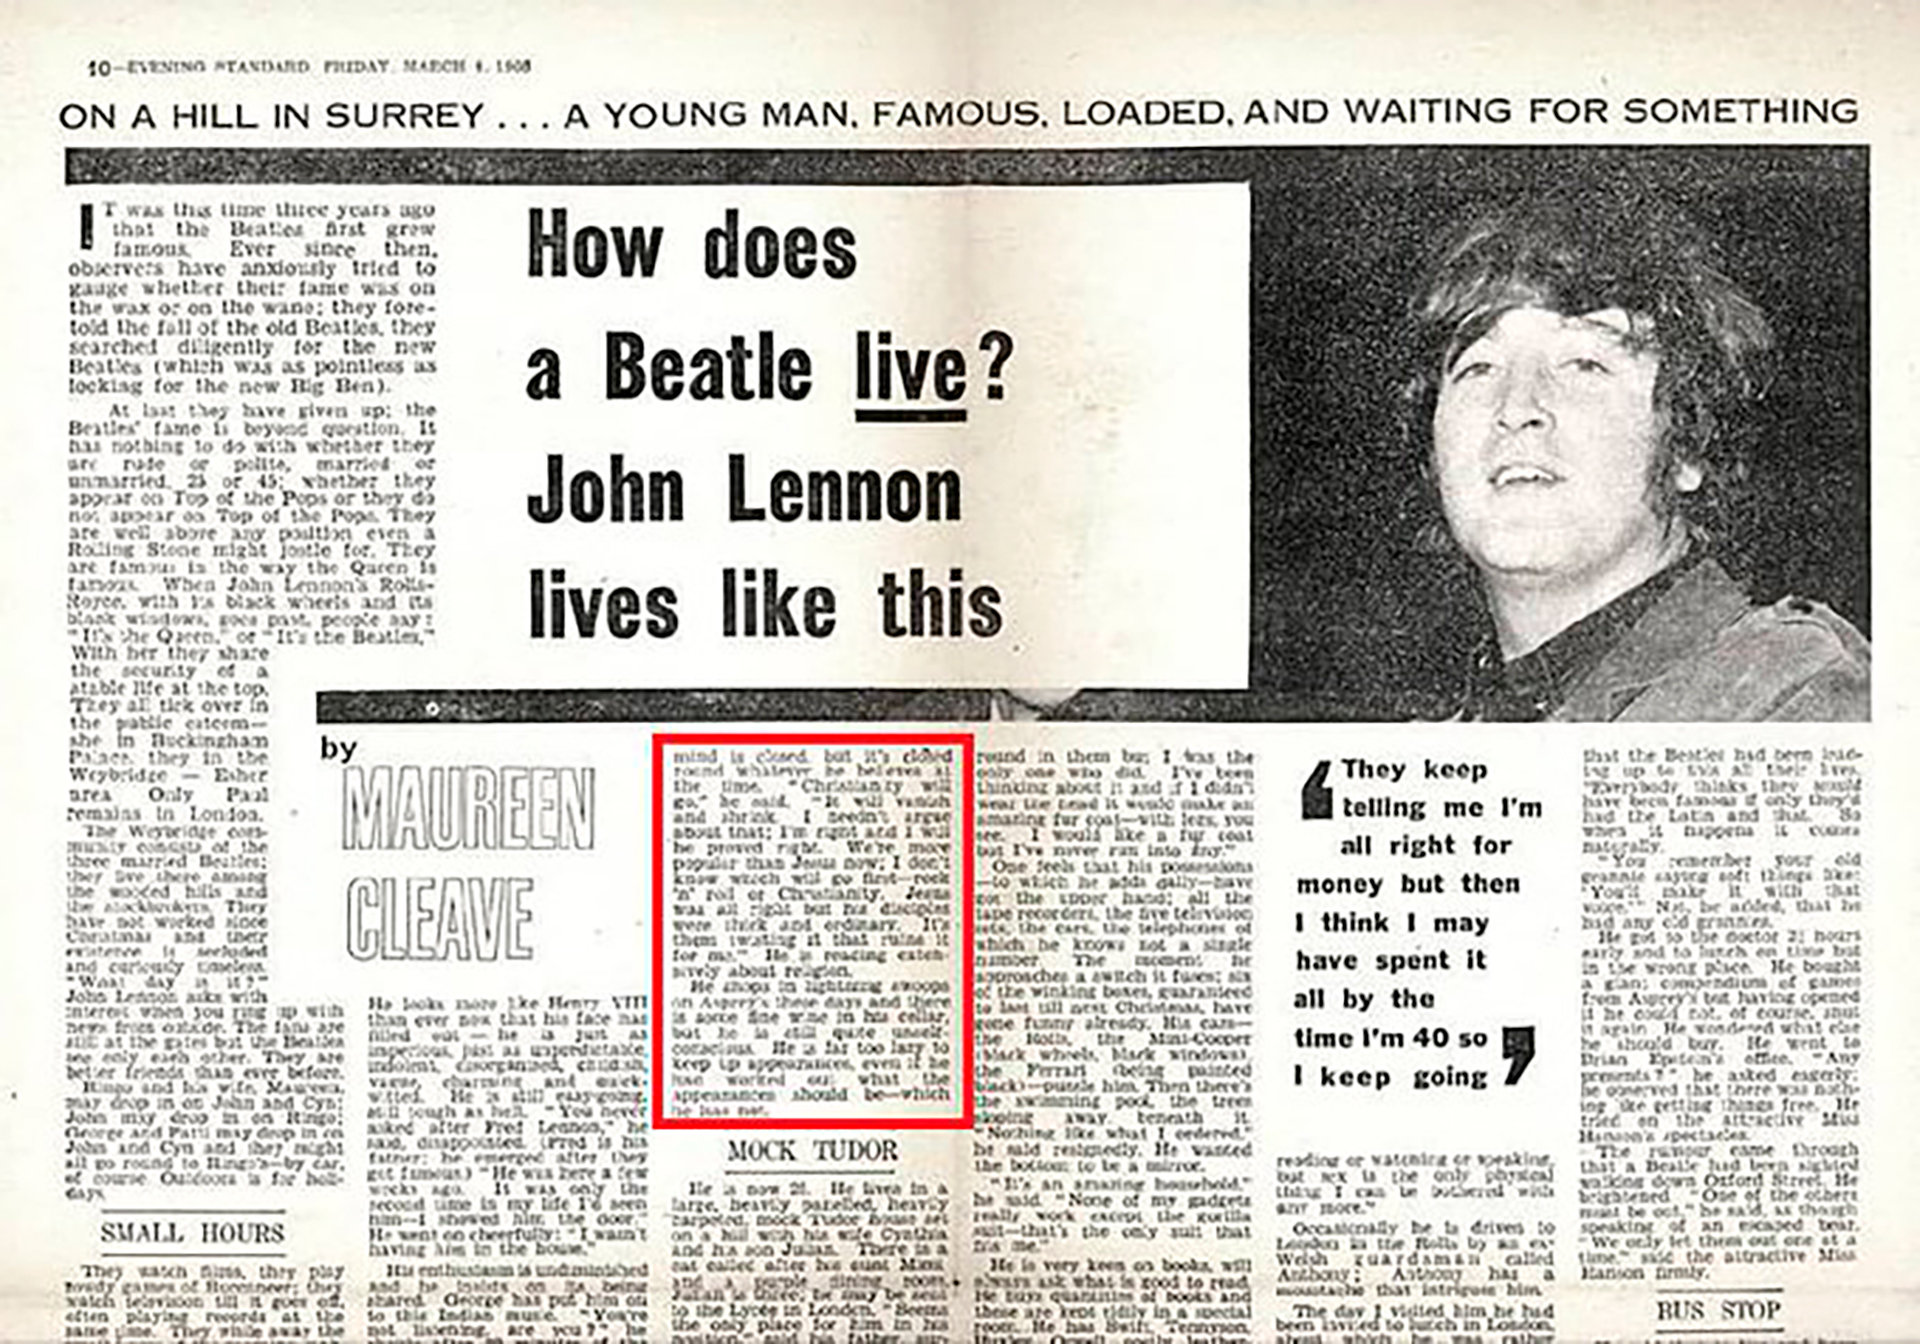 "Nosotros somos más populares que Jesús", dijo John Lennon. La controversia desató meses después, cuando la frase fue recuperada por otro medio